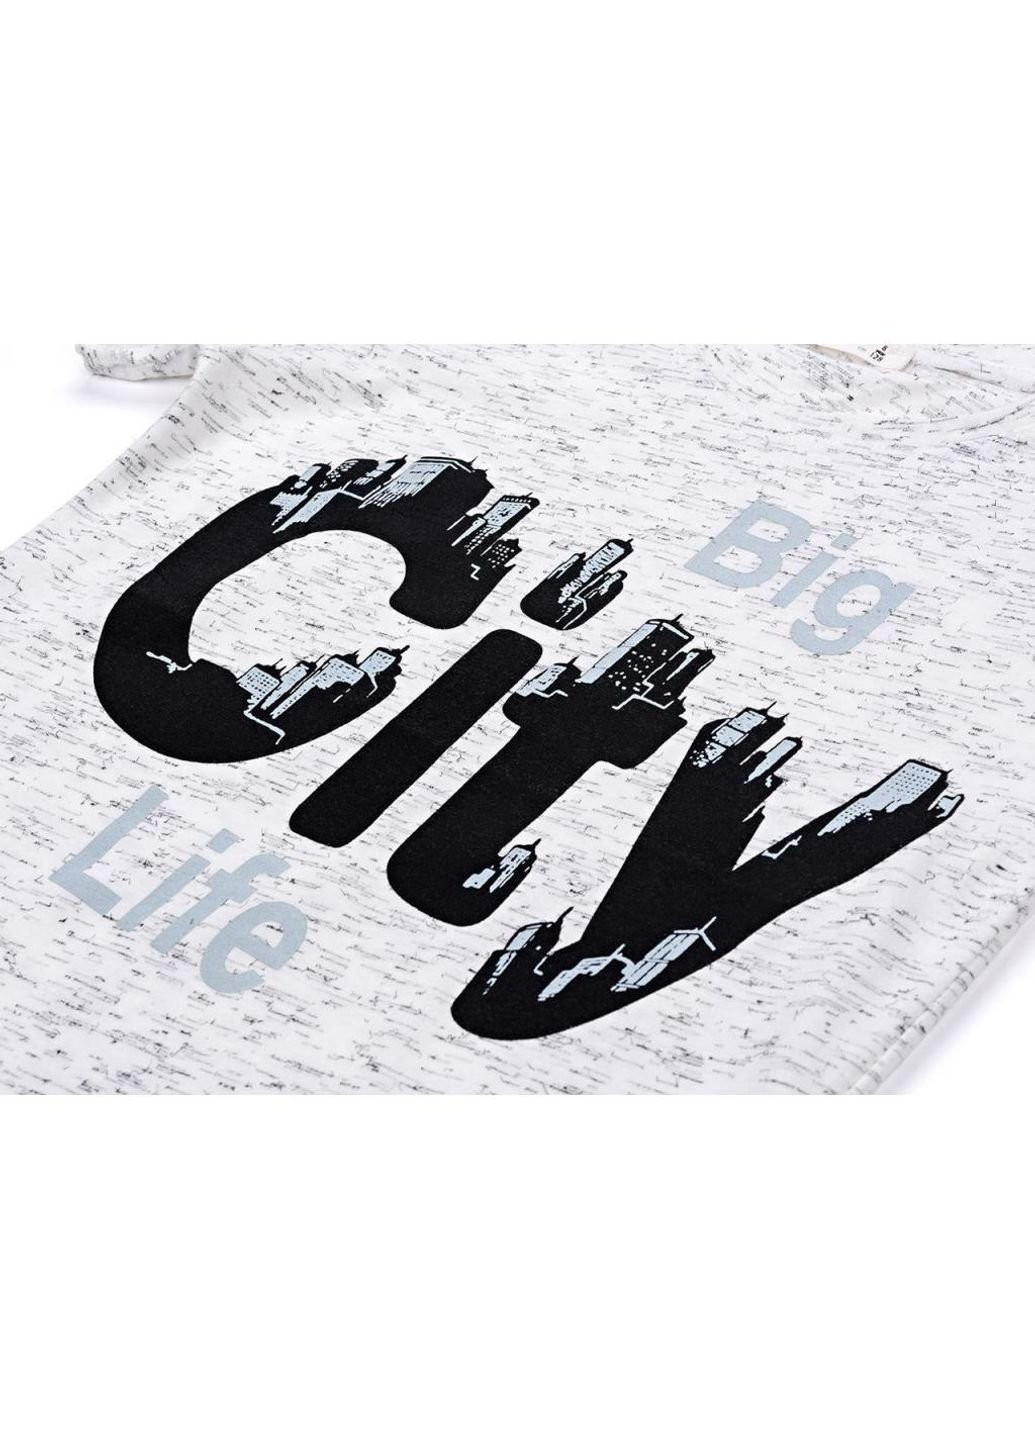 Серая демисезонная футболка детская "big city life" (11129-128b-gray) Breeze